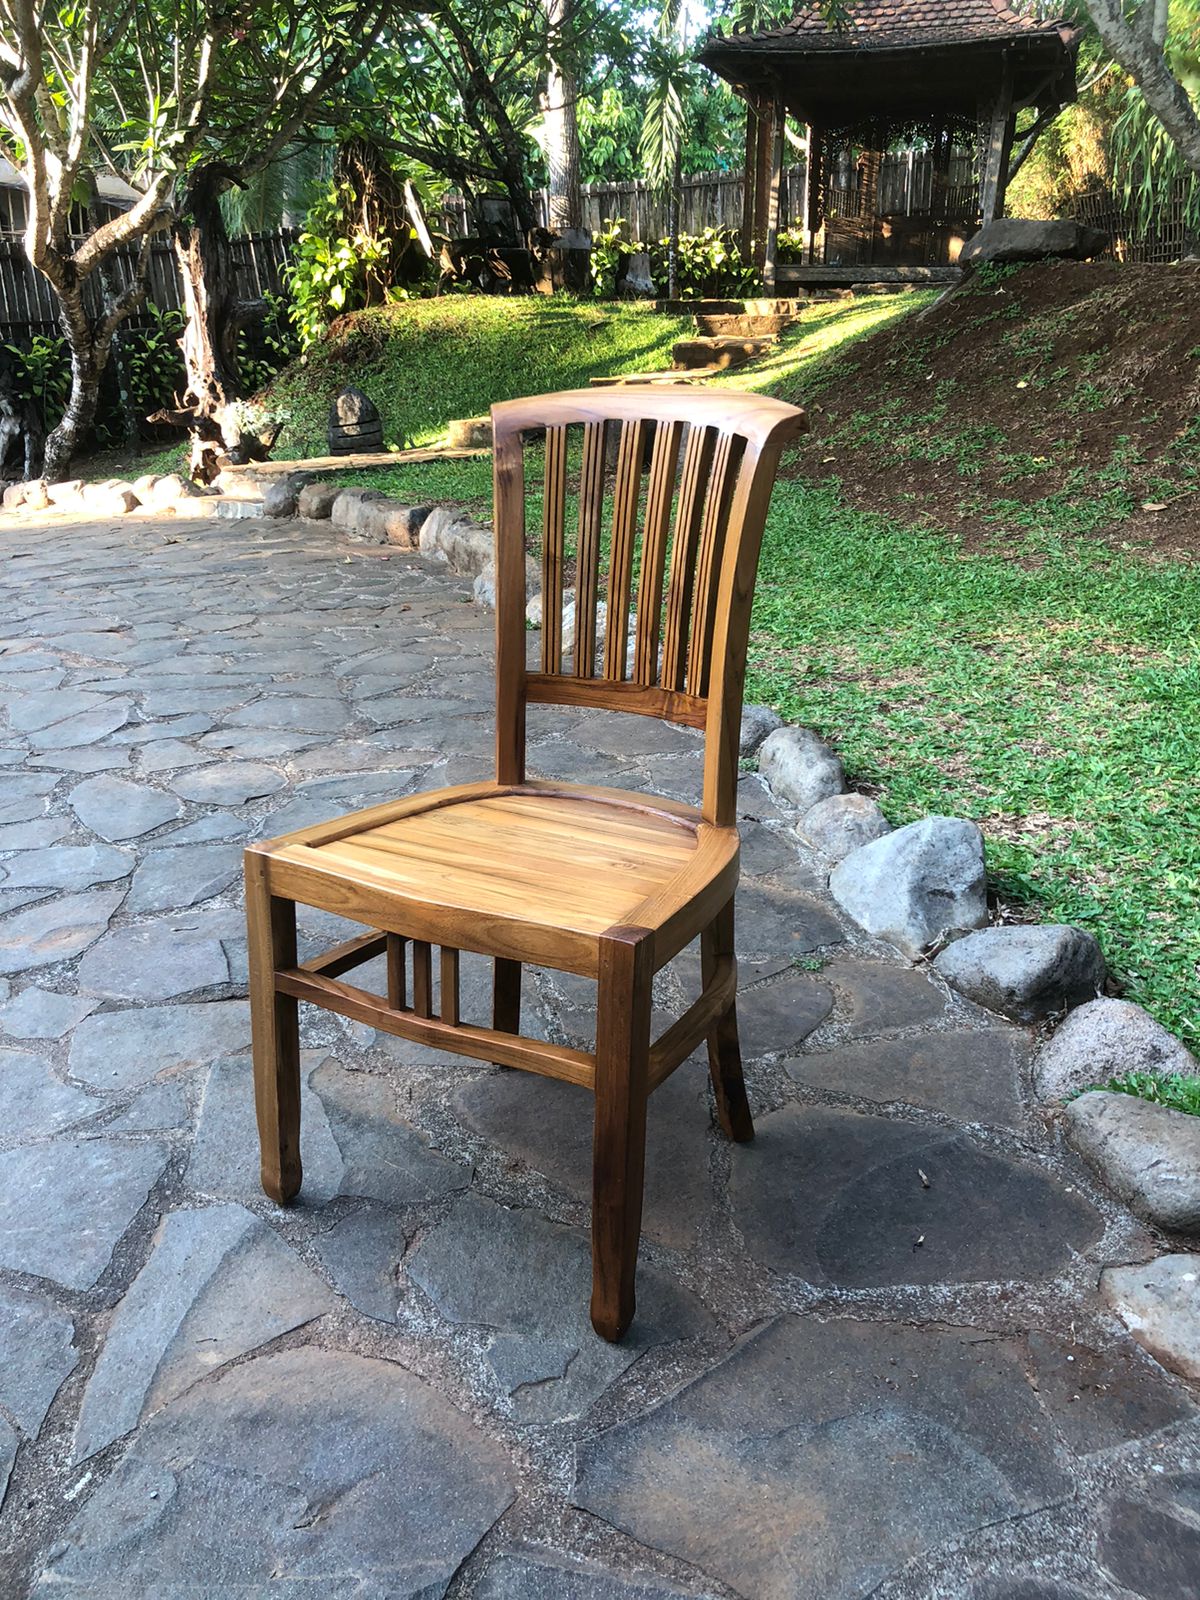 כיסא אוכל עץ מלא דגם ivy עץ טיק חזק ונוח במיוחד מידה 93*48*50 במחיר מבצע: 990 ש"ח